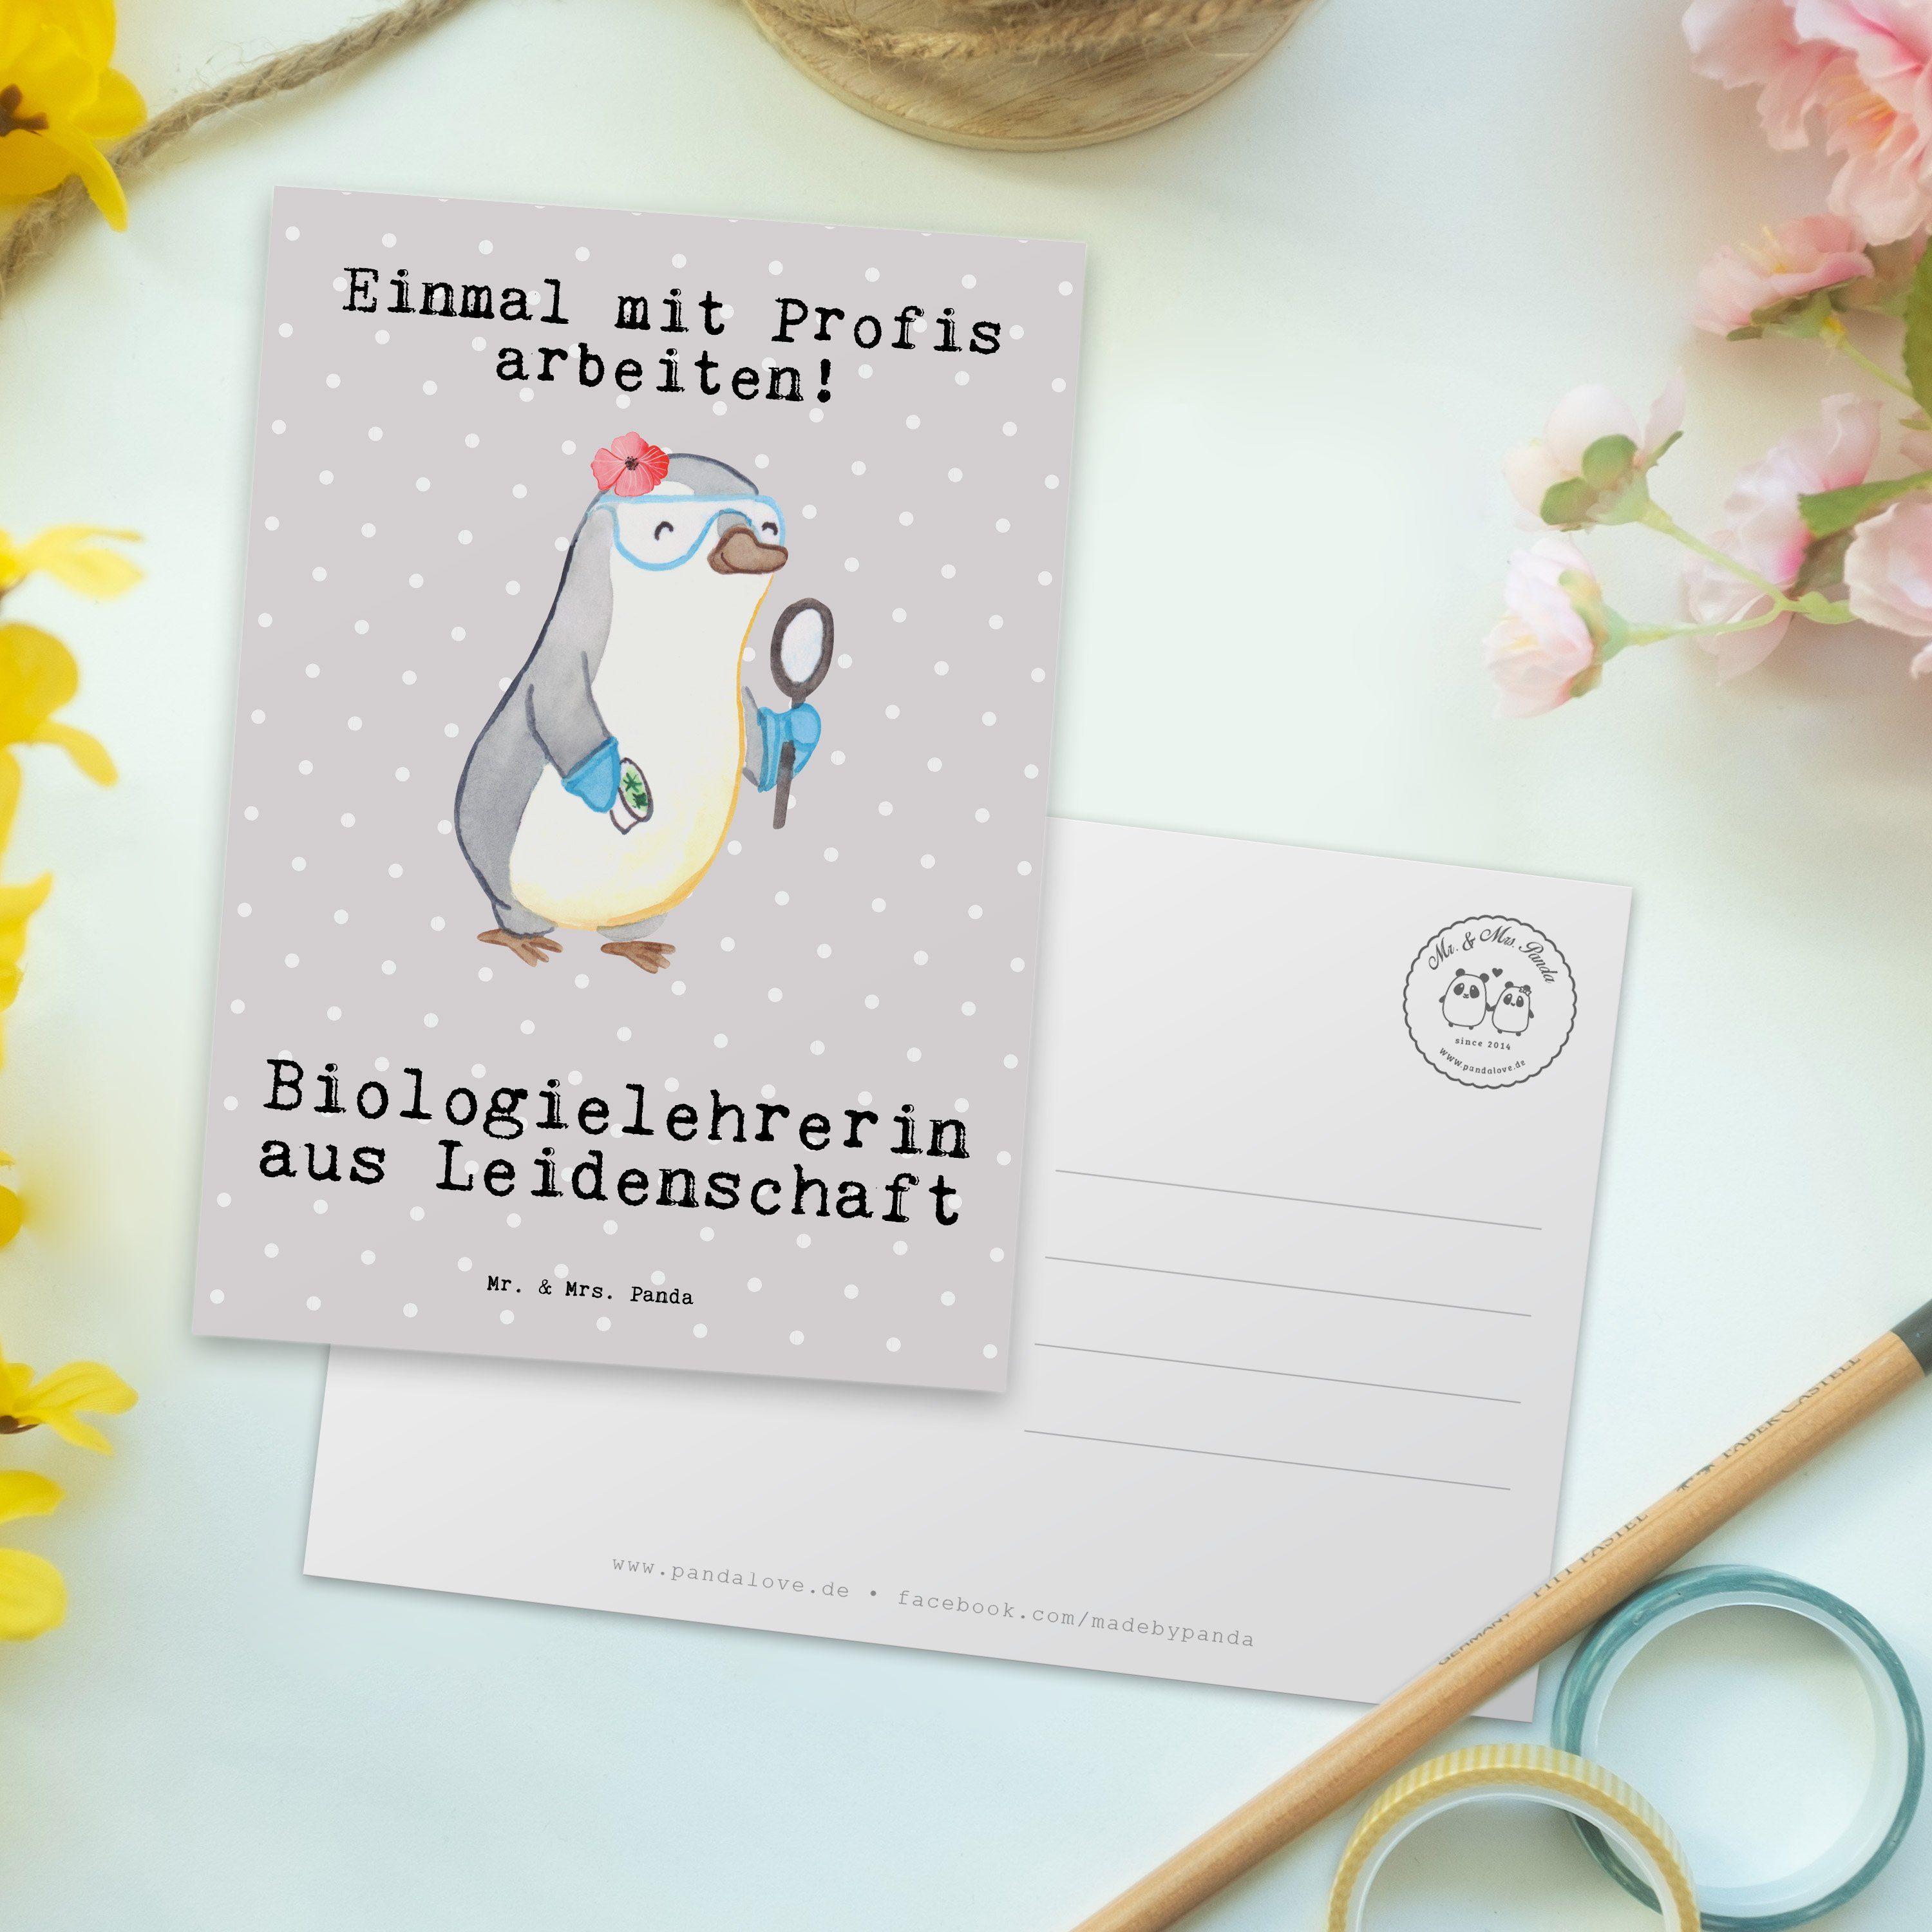 Mr. & Mrs. Panda - Biologielehrerin Arbeitsk aus Leidenschaft Postkarte Pastell - Grau Geschenk